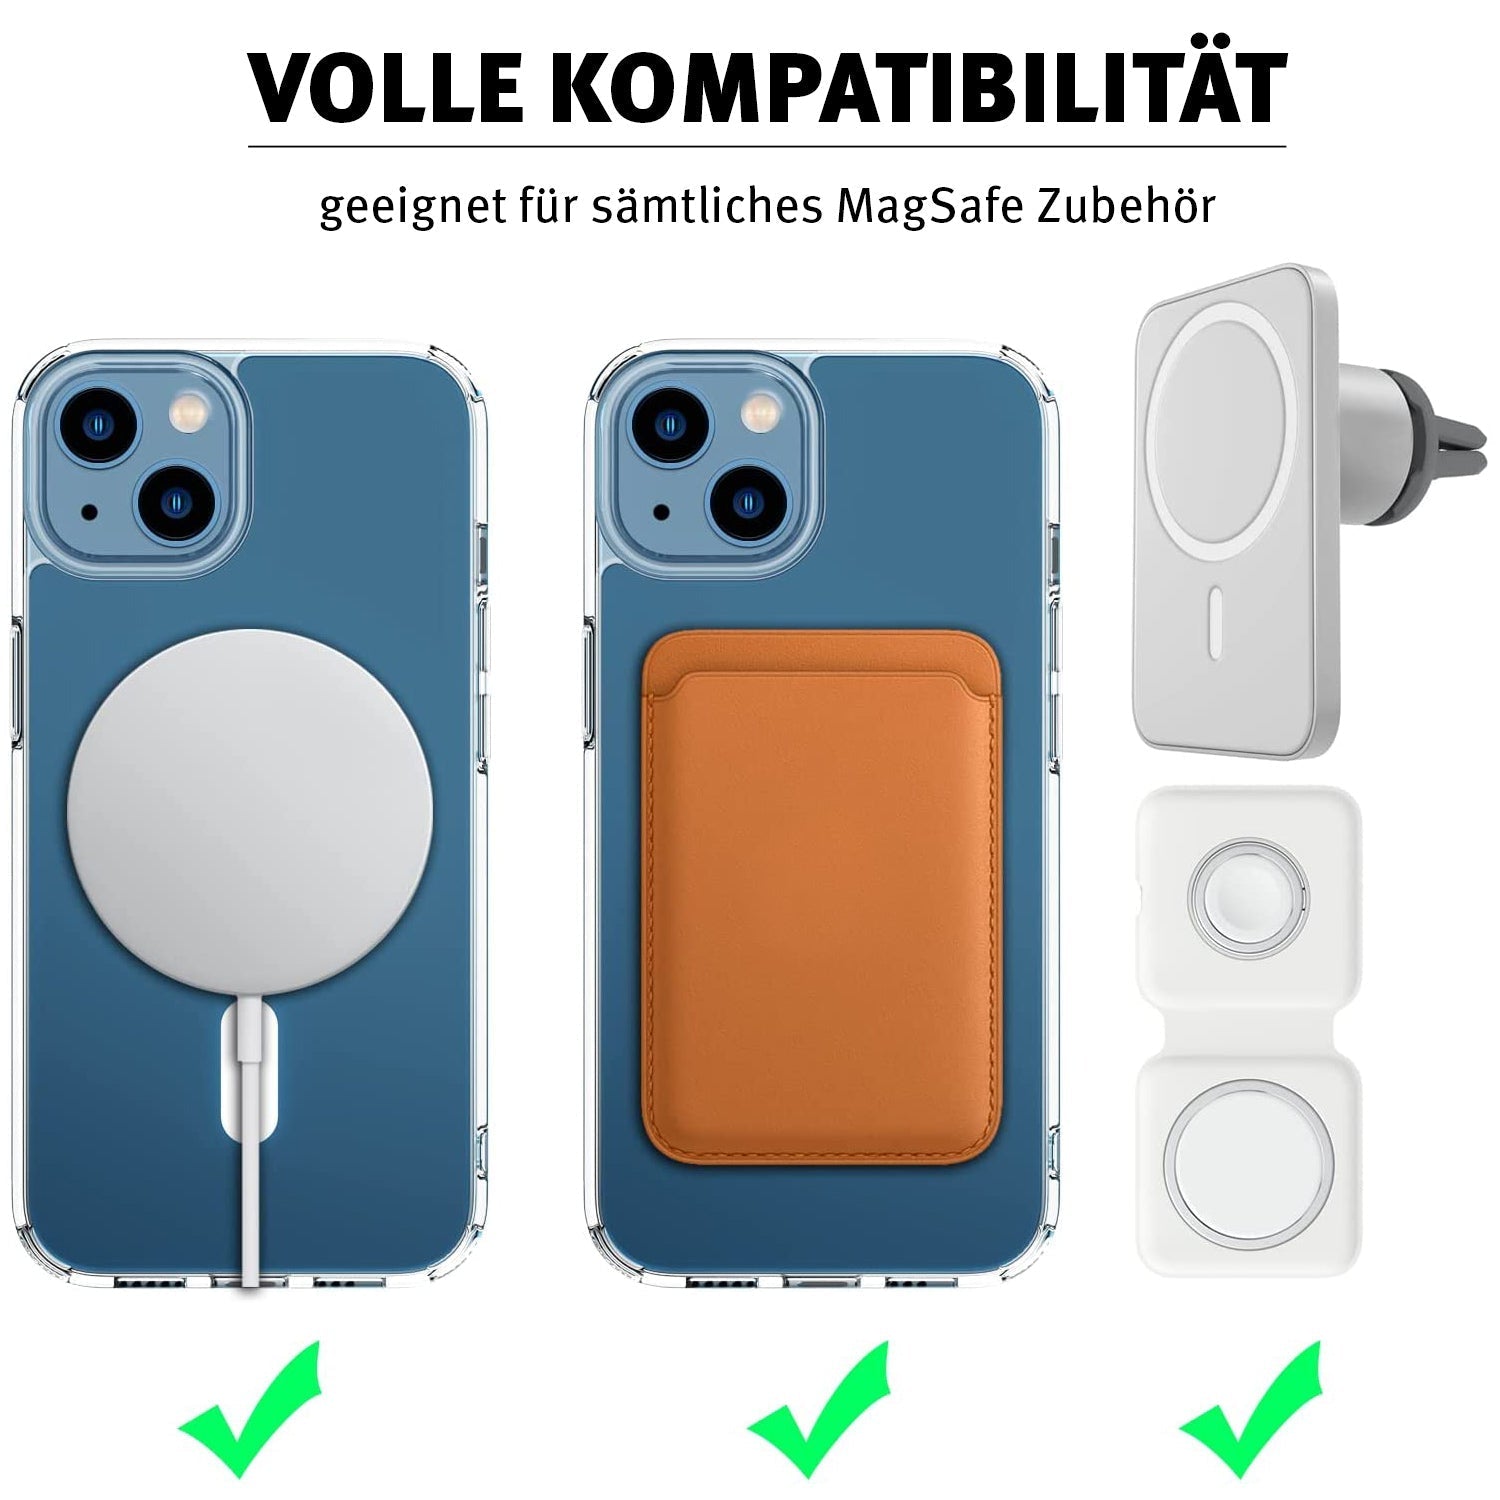 MagSafe-Zubehör für iPhone 12 günstig kaufen